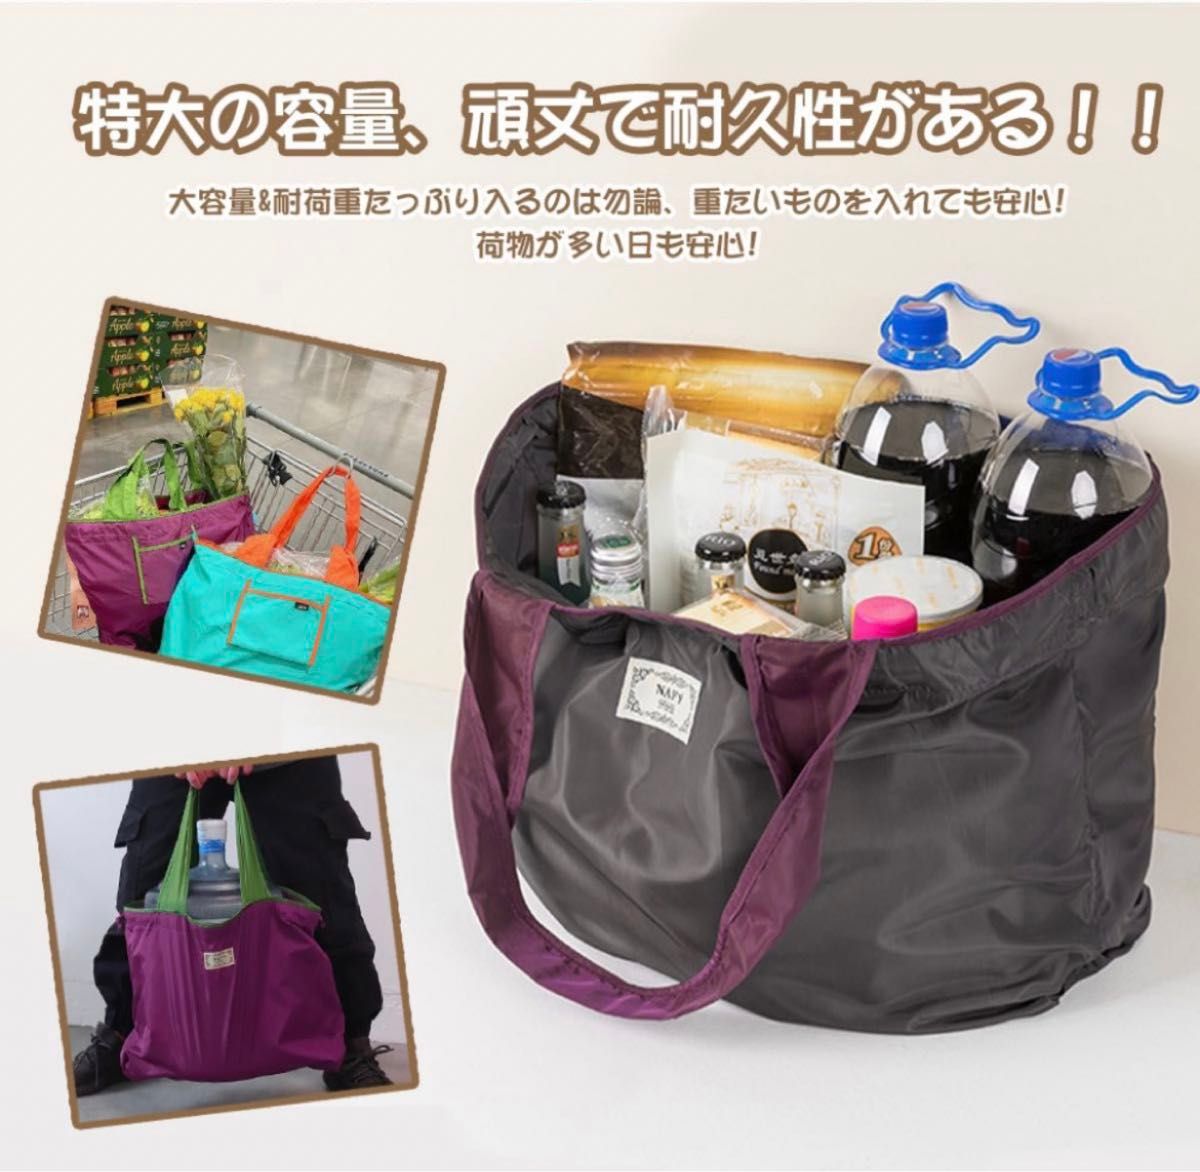 エコバッグ コンビニバッグ 買い物バッグ 折りたたみ 大容量 防水素材 軽量